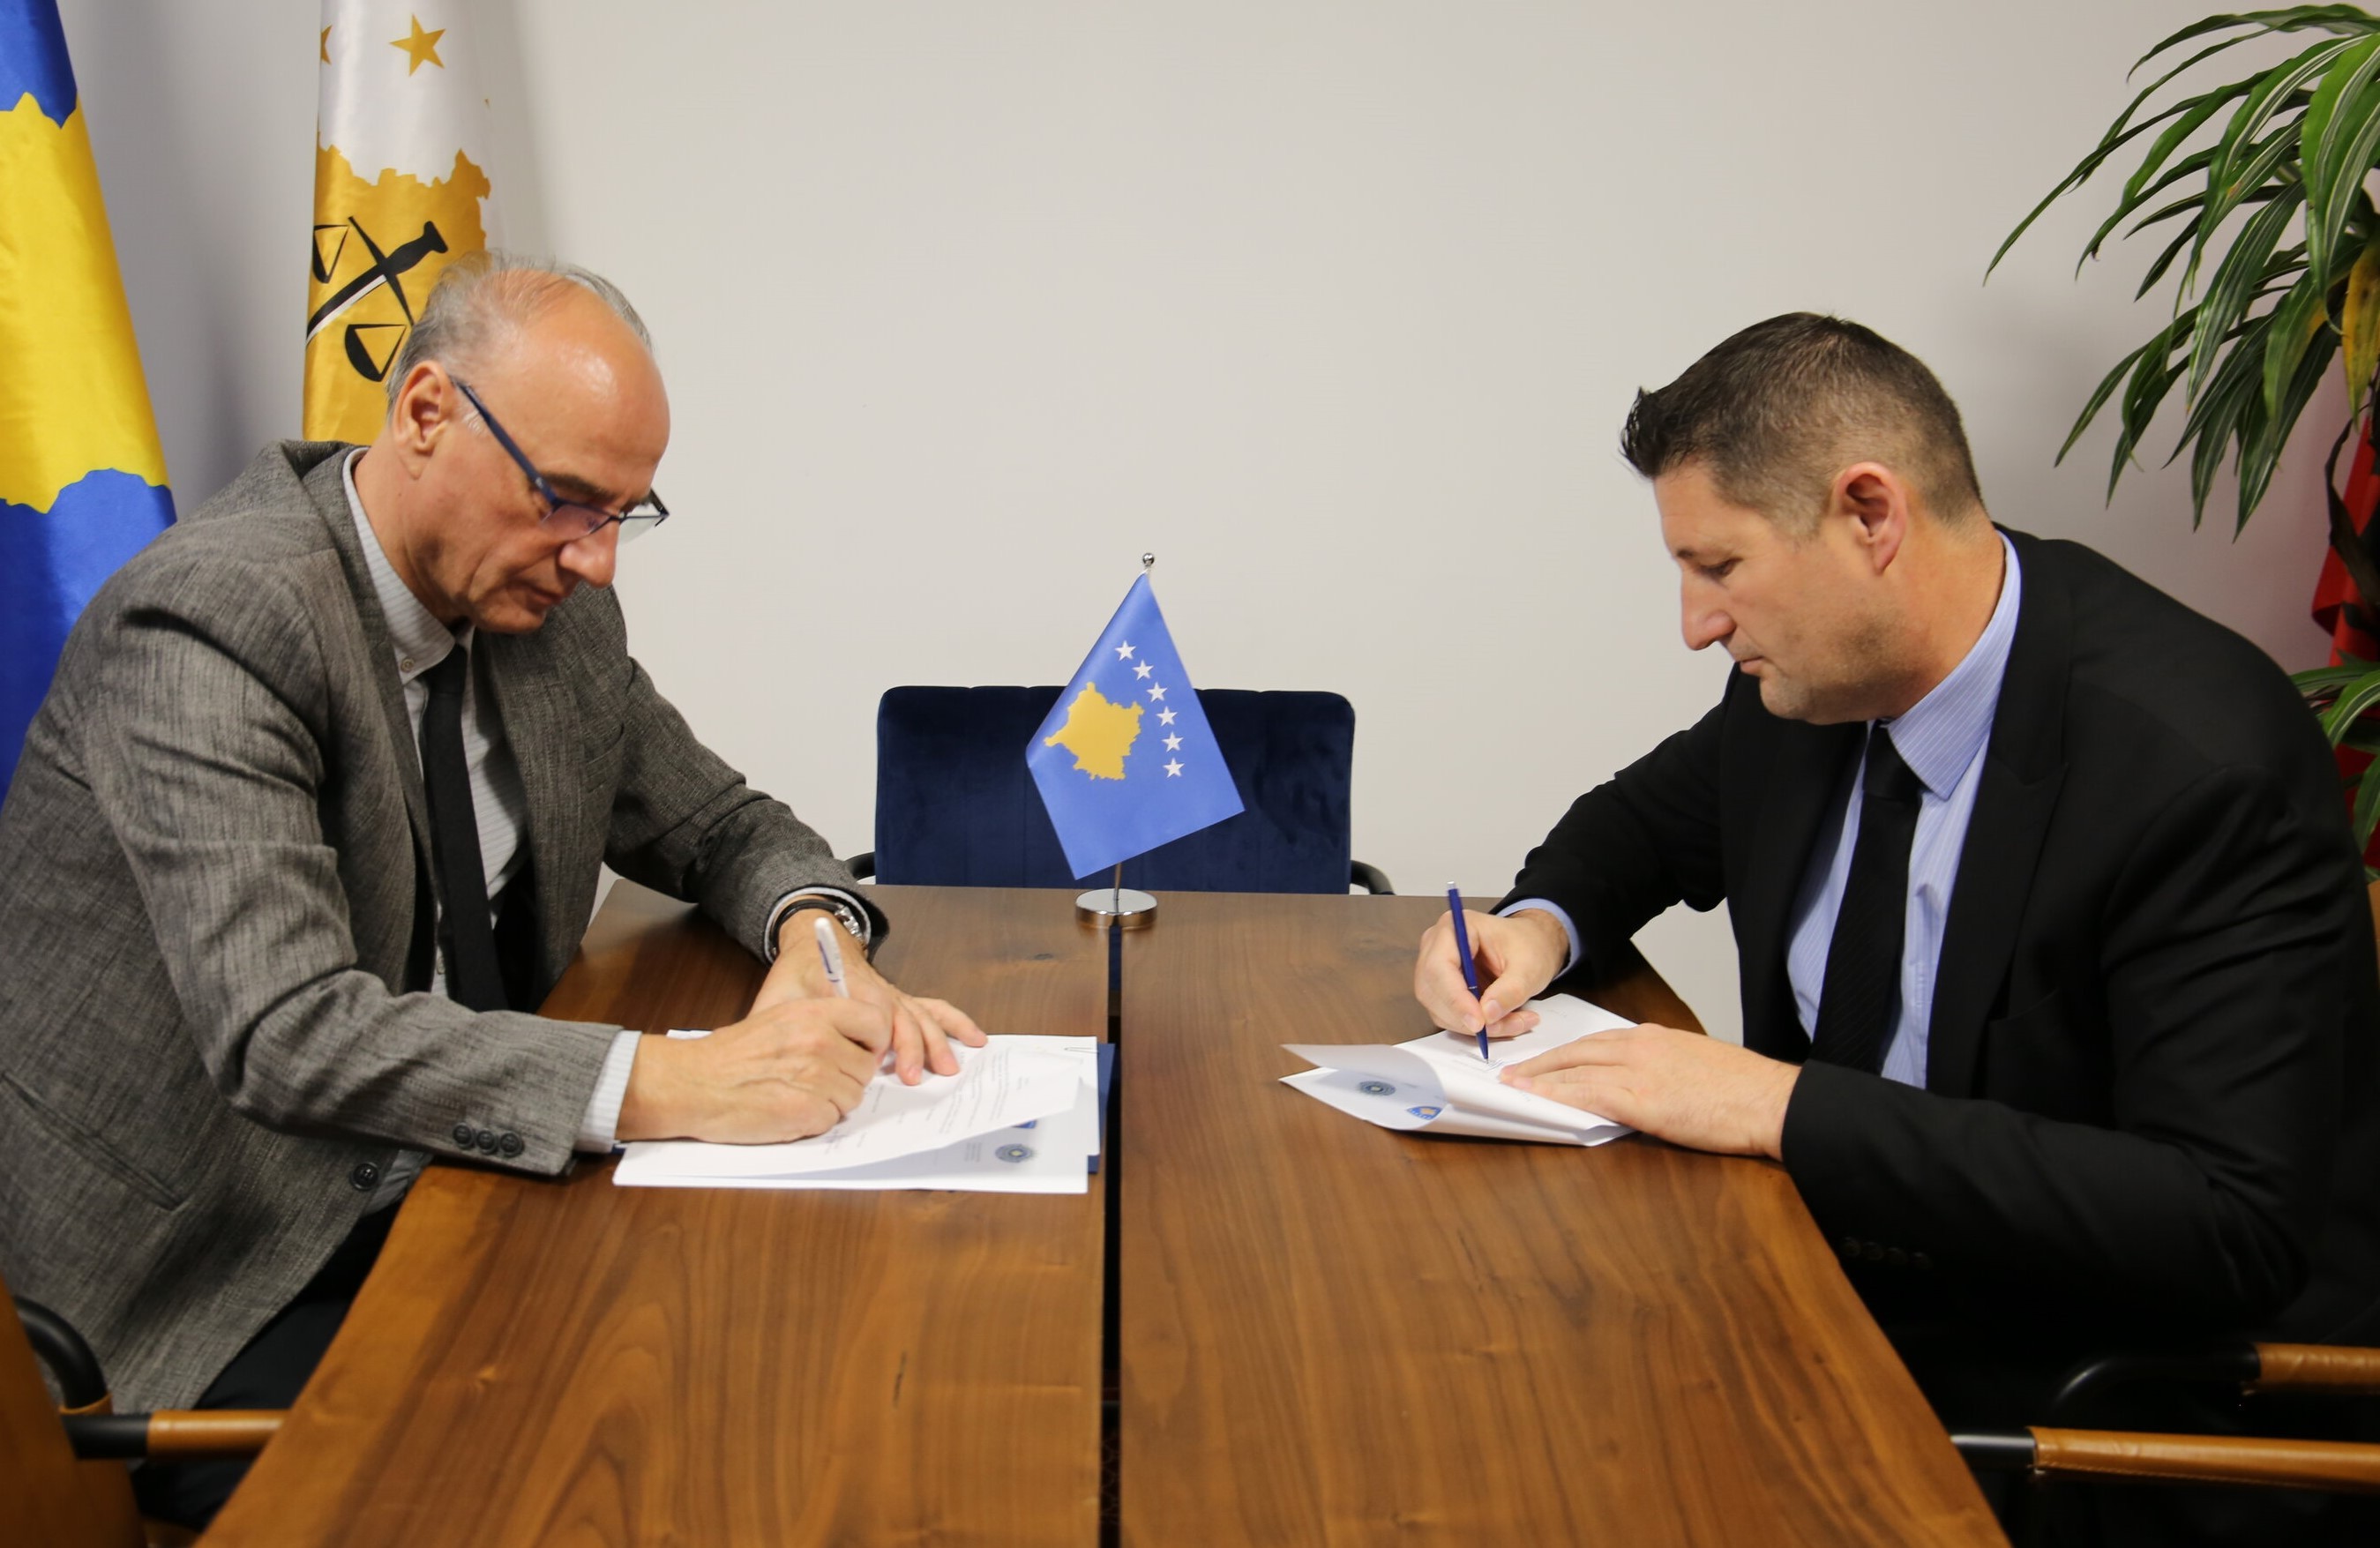 Këshilli Prokurorial dhe Dogana e Kosovës me memorandum bashkëpunimi